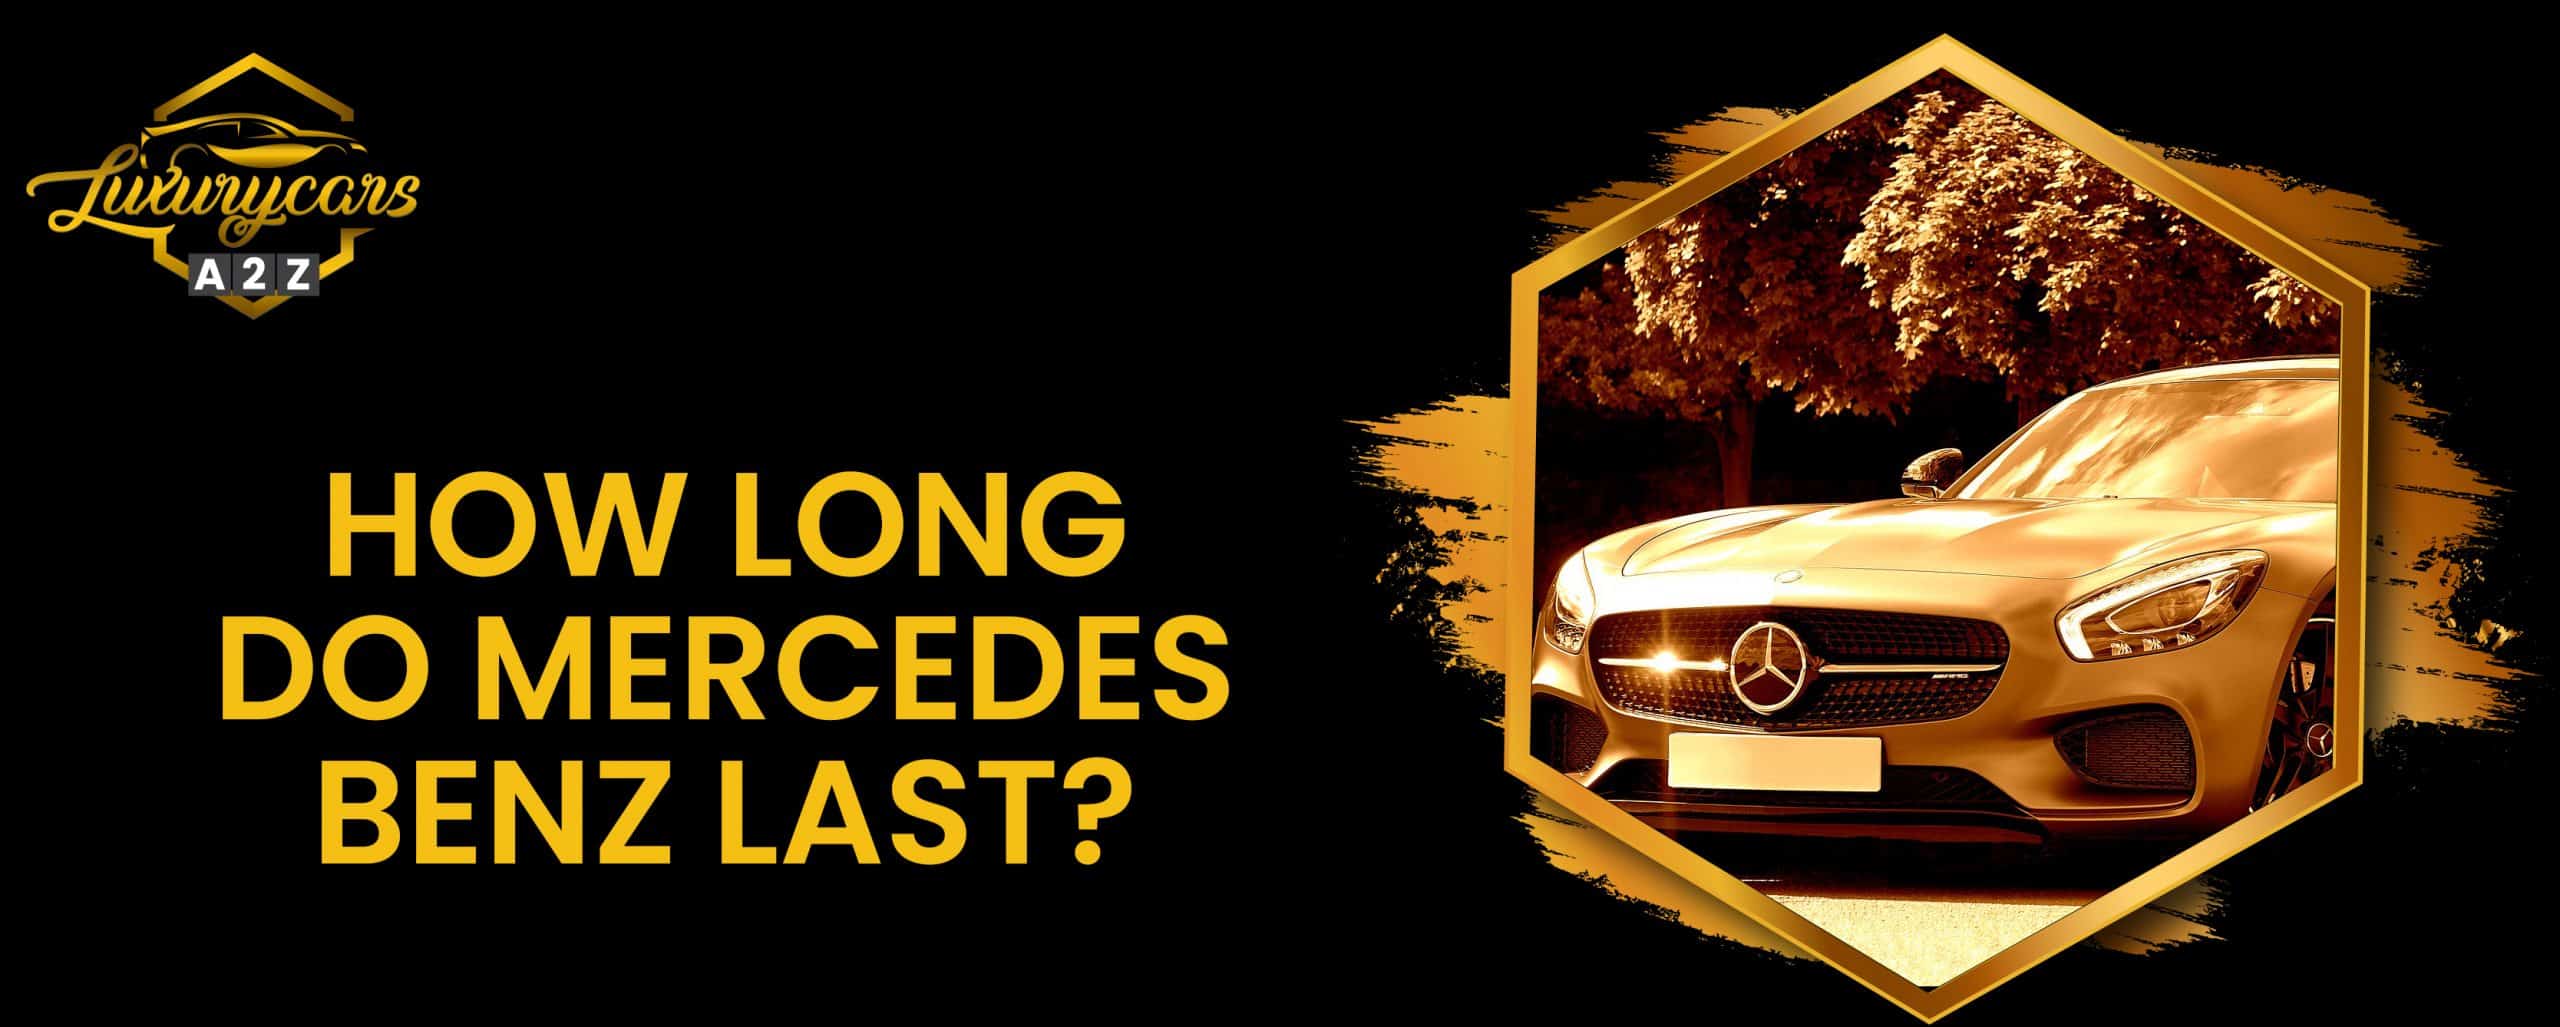 Quelle est la durée de vie des voitures Mercedes Benz ?